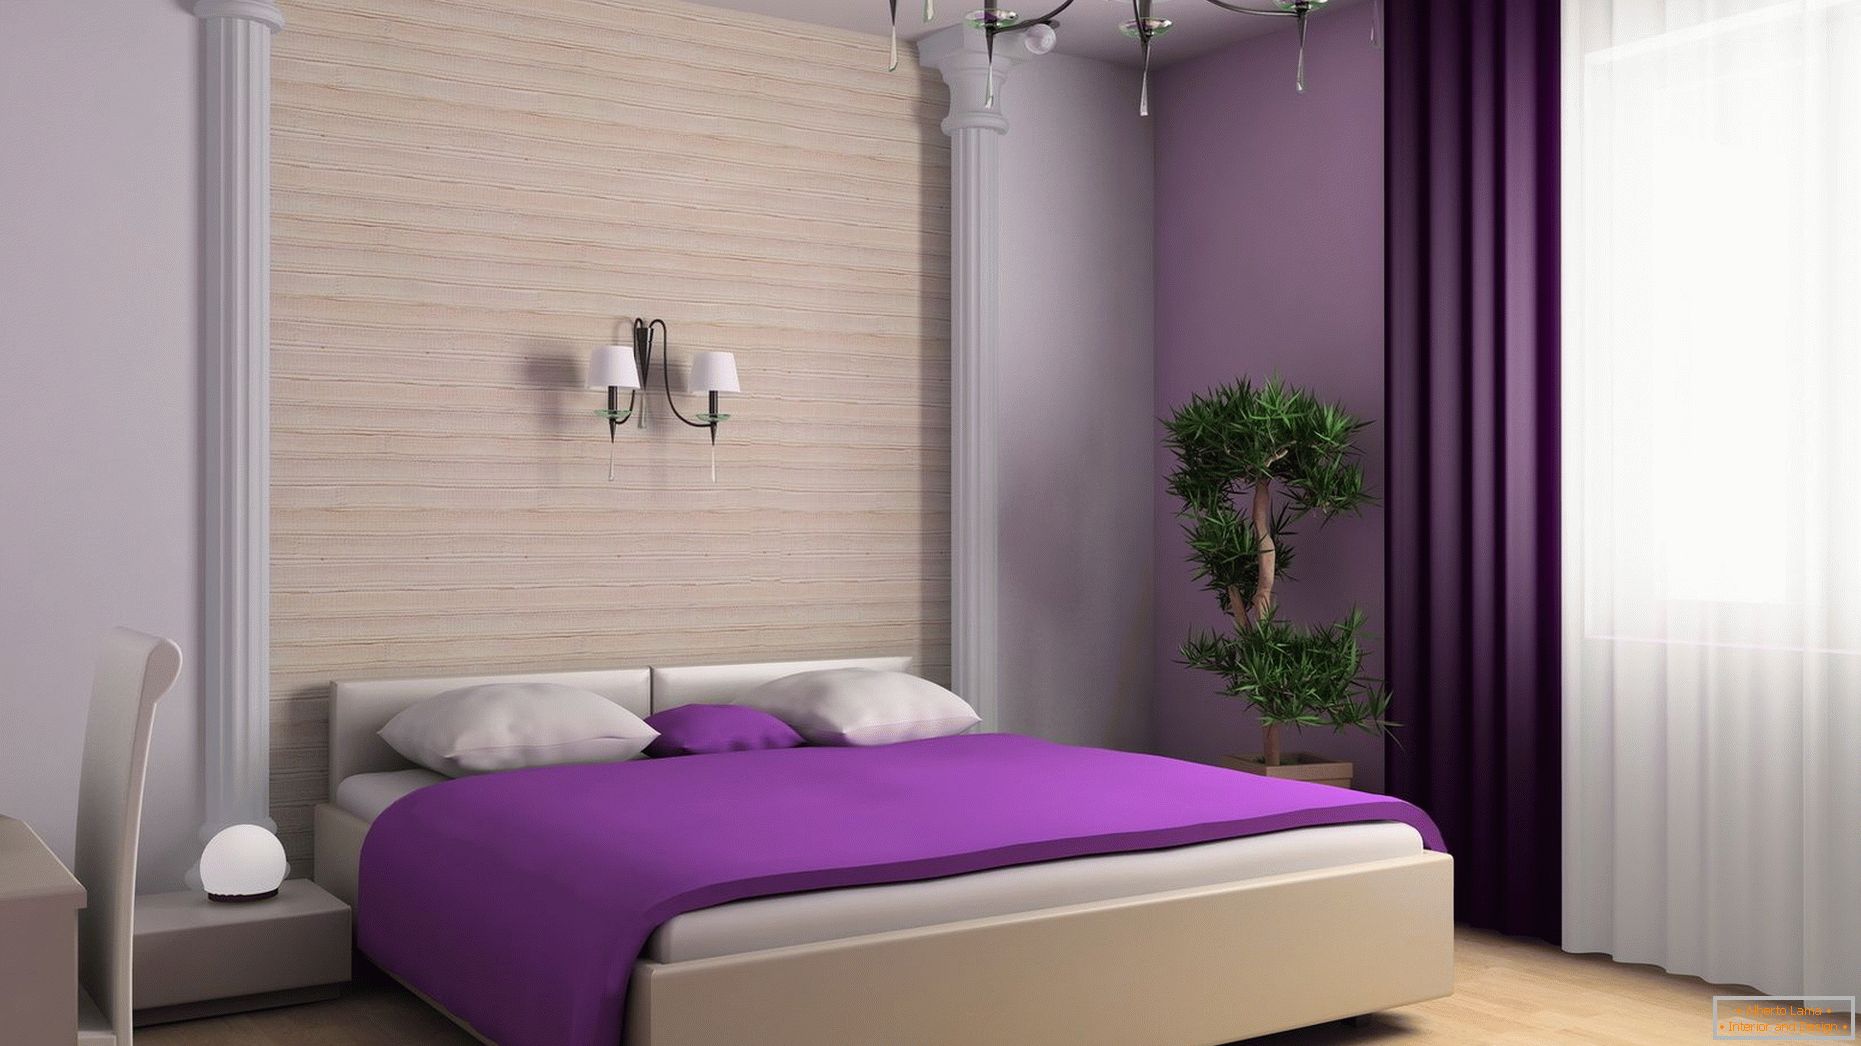 Violet blanket on the bed